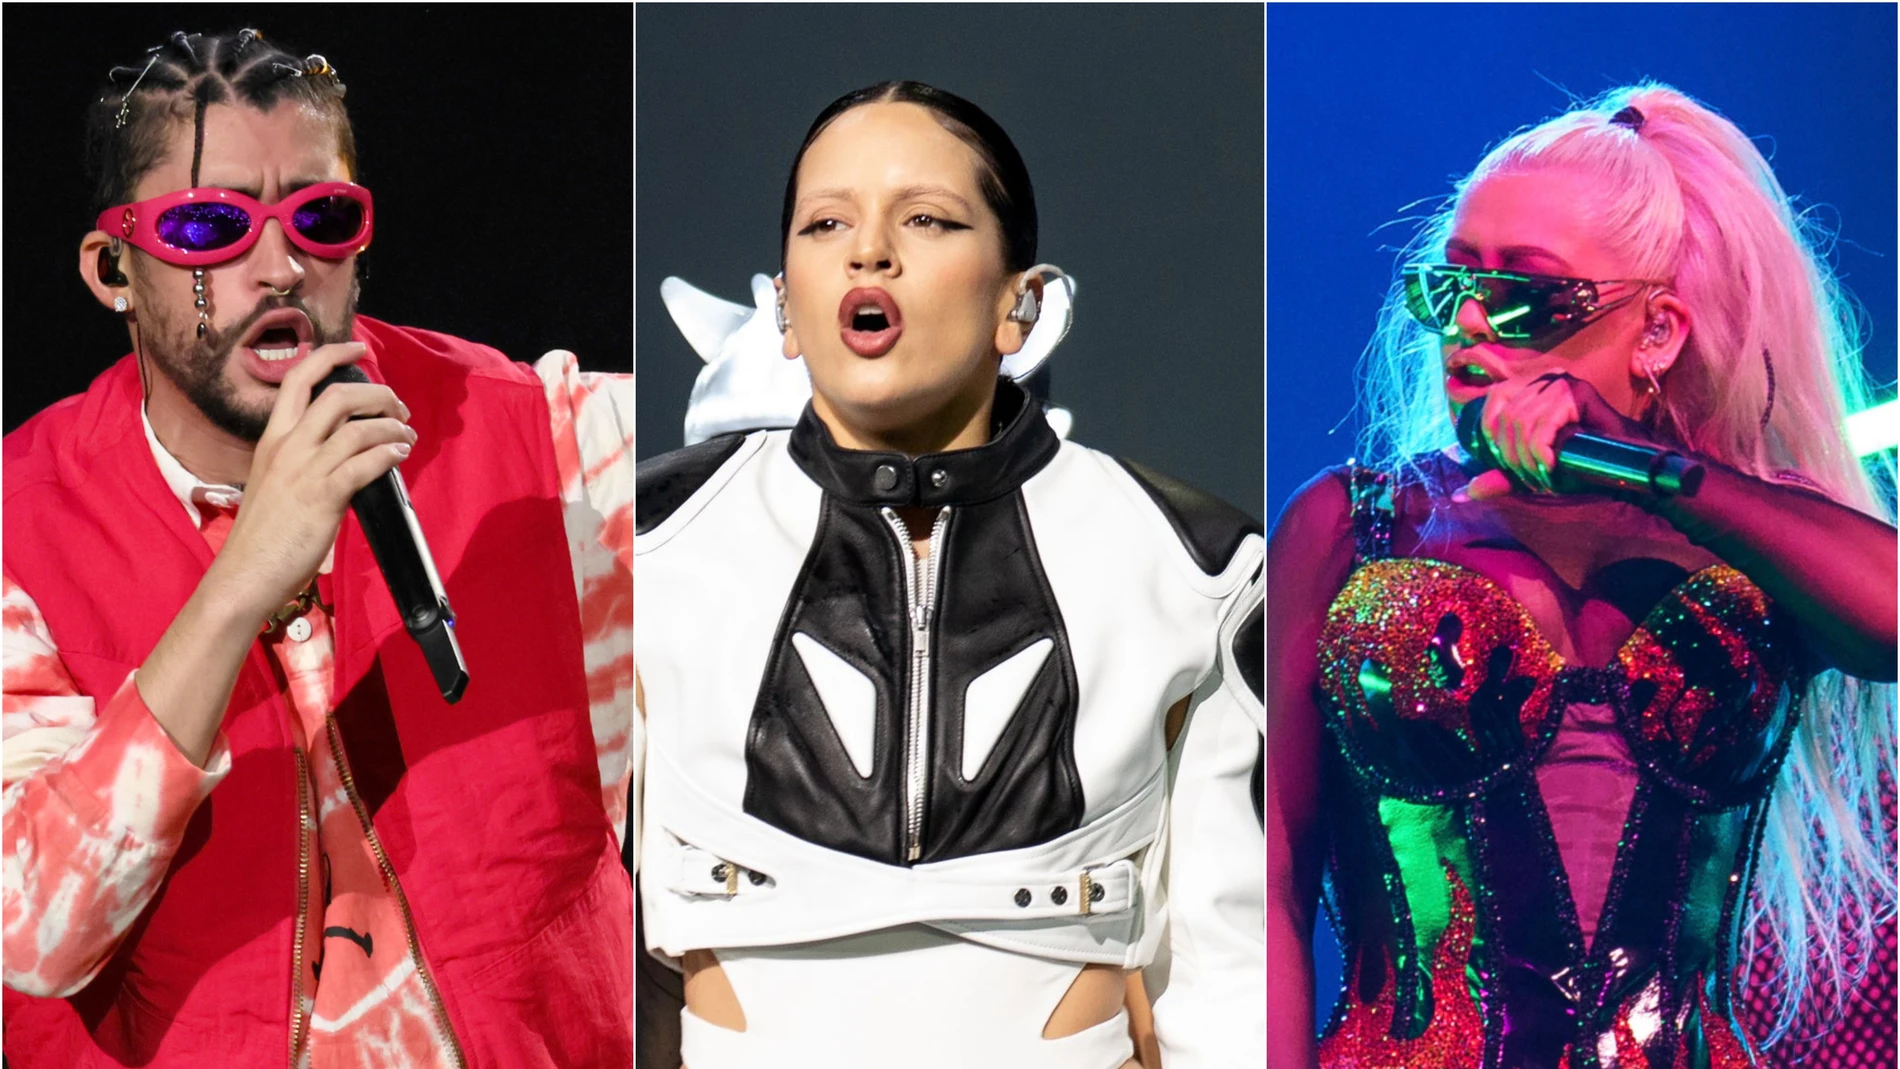 Premios Latin Grammy 2022: esta es la lista completa de artistas nominados